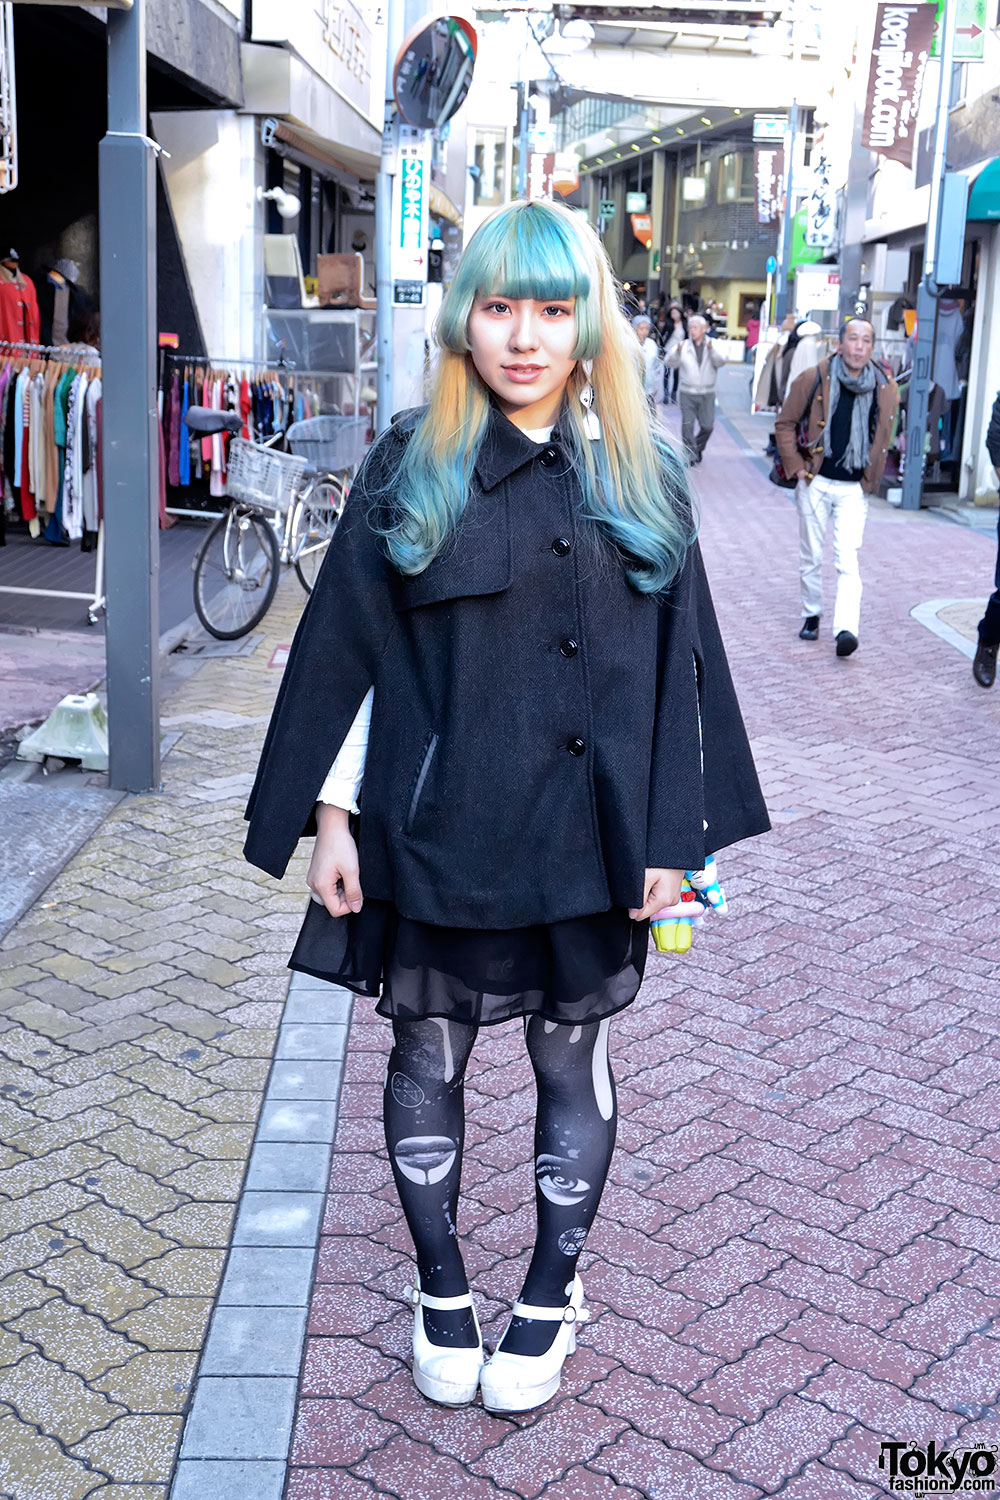 Green Bangs Hairstyle, Sheer Skirt, Graphic Tights & Hello Kitty in Koenji